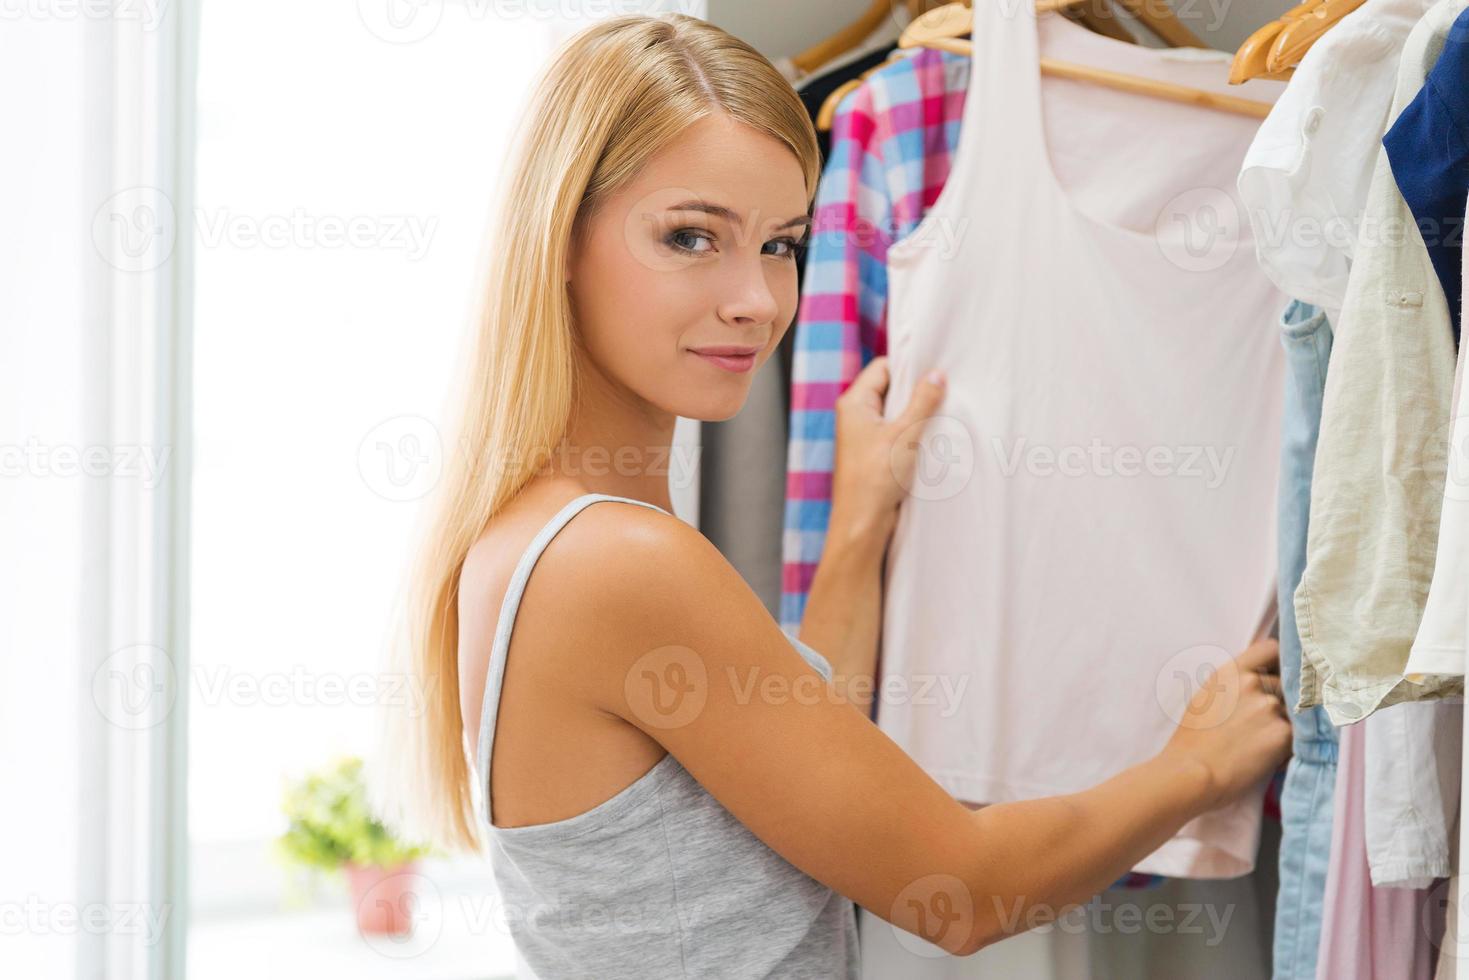 escolhendo roupa para hoje. jovem sorridente escolhendo roupas e olhando para a câmera em pé perto de seu guarda-roupa foto